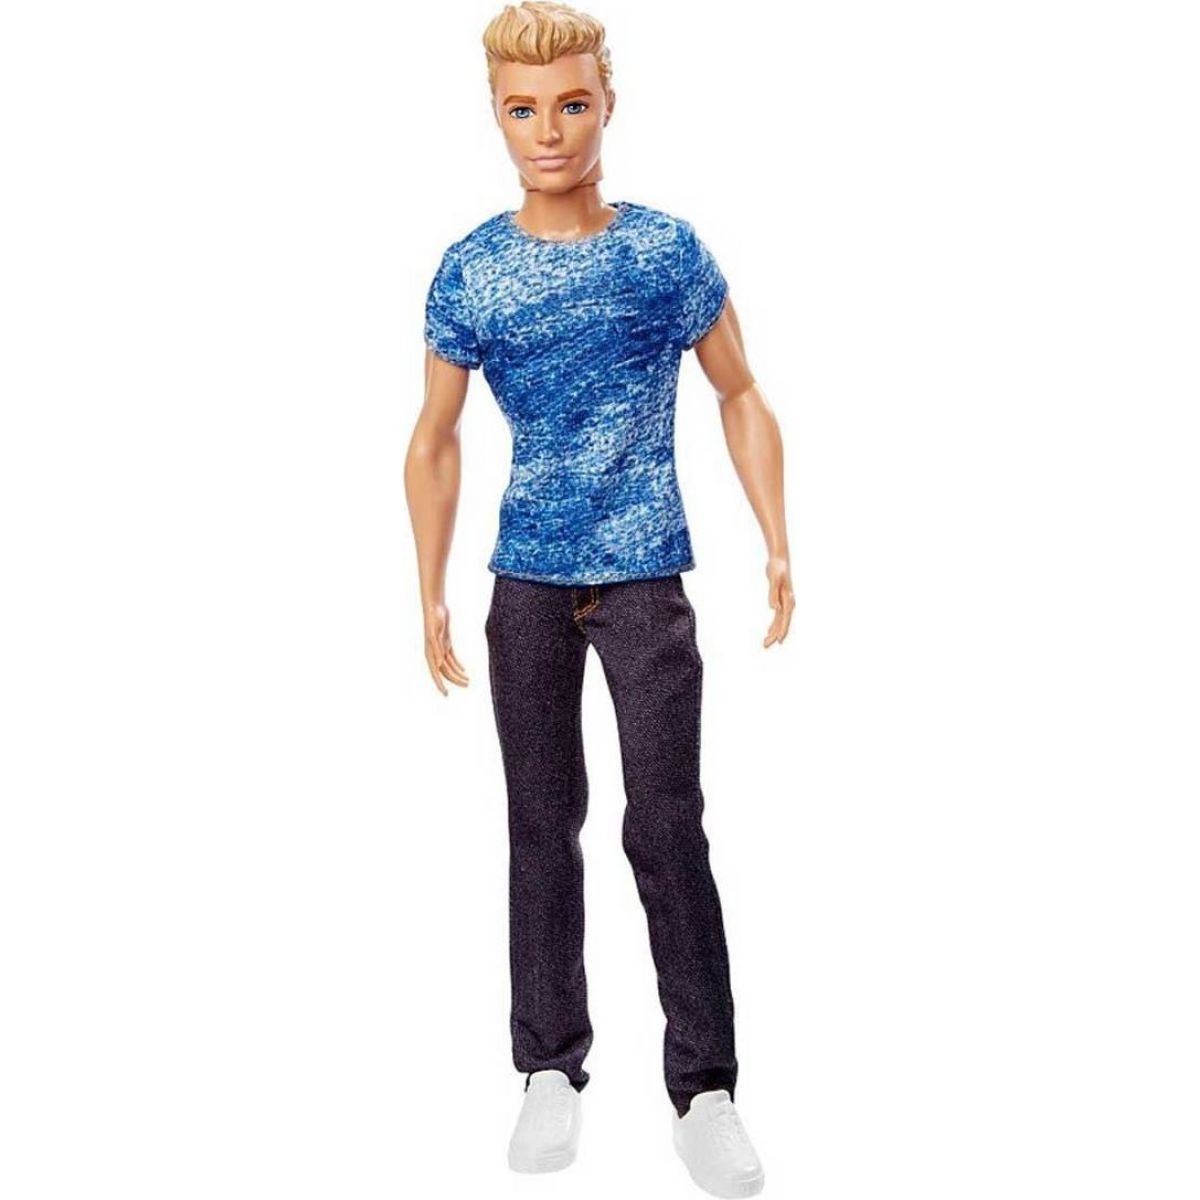 Barbie Ken model - DGY67